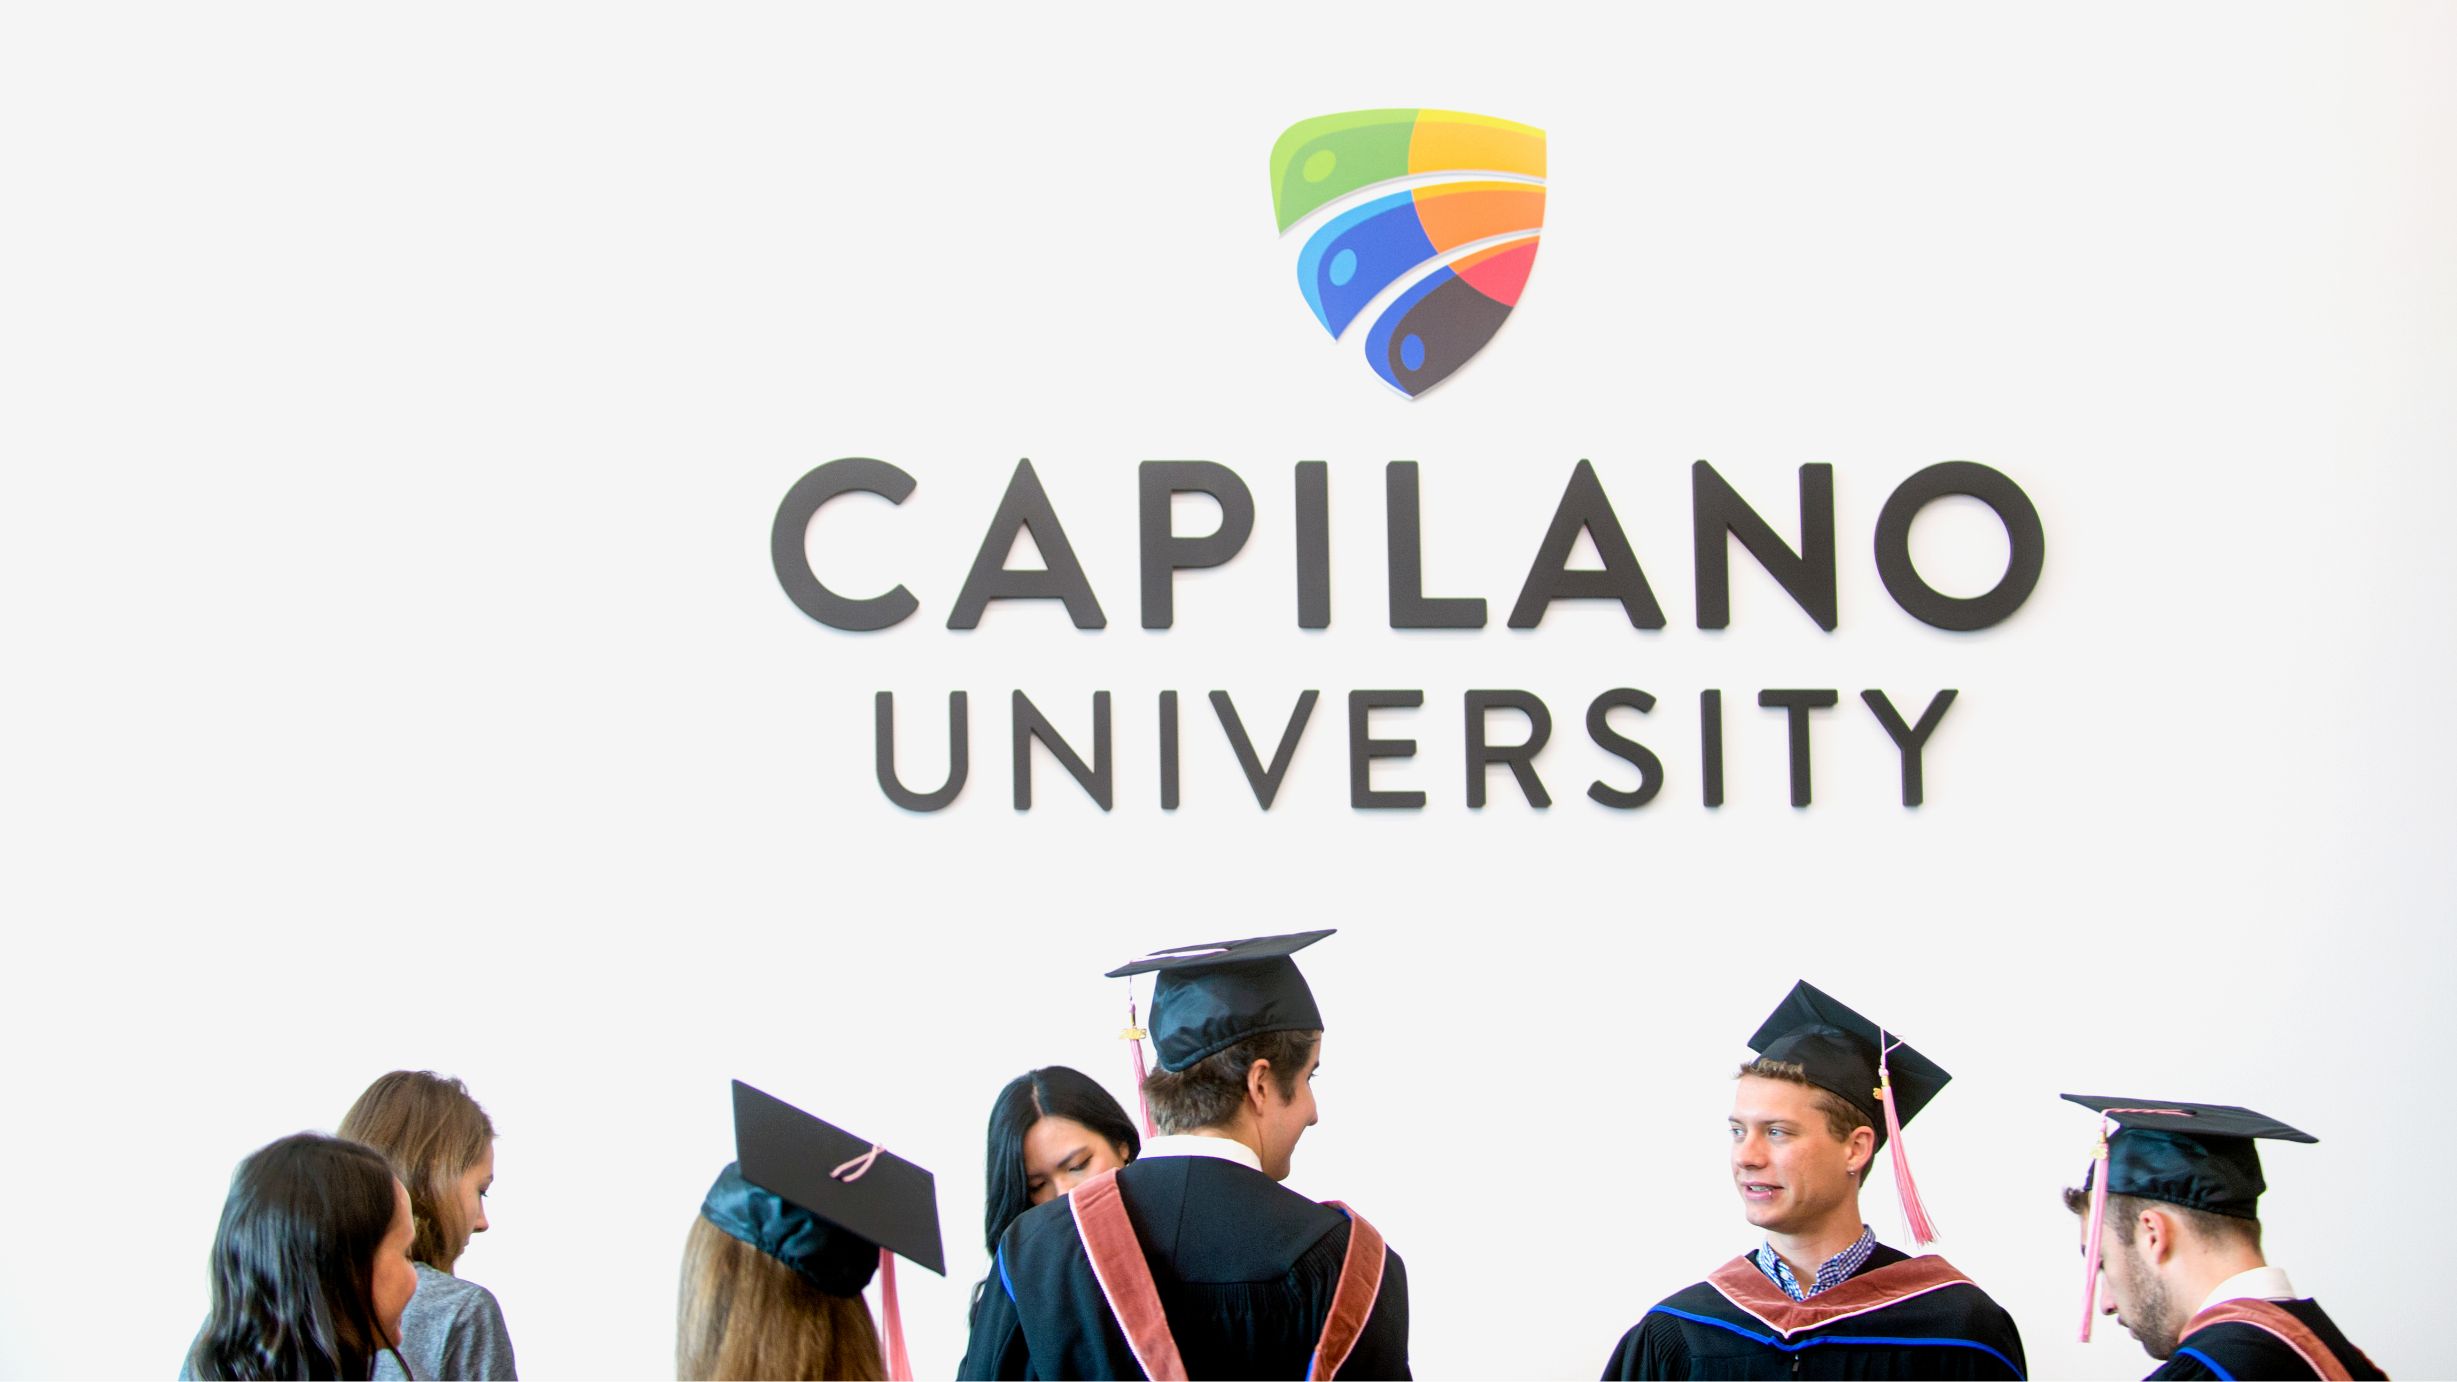 Capilano University Logo on wall